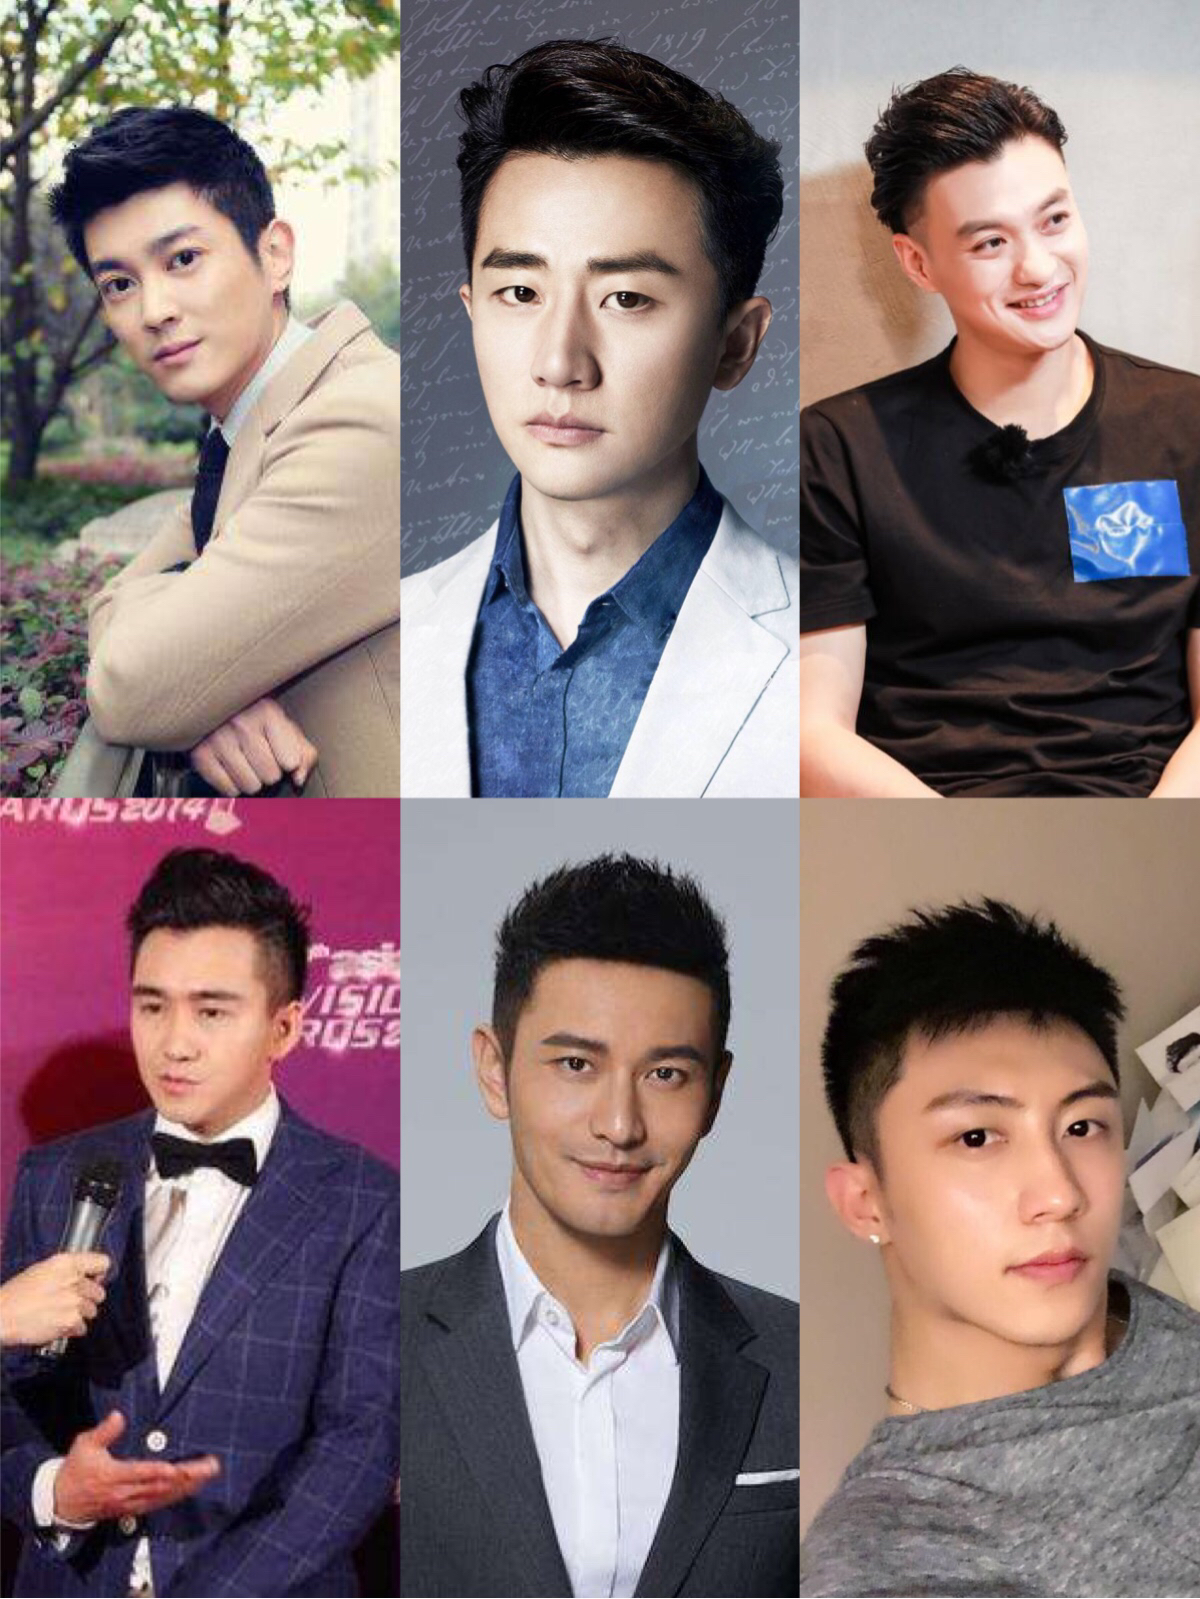 主题:中日韩男演员造型最大区别的是不是发型?